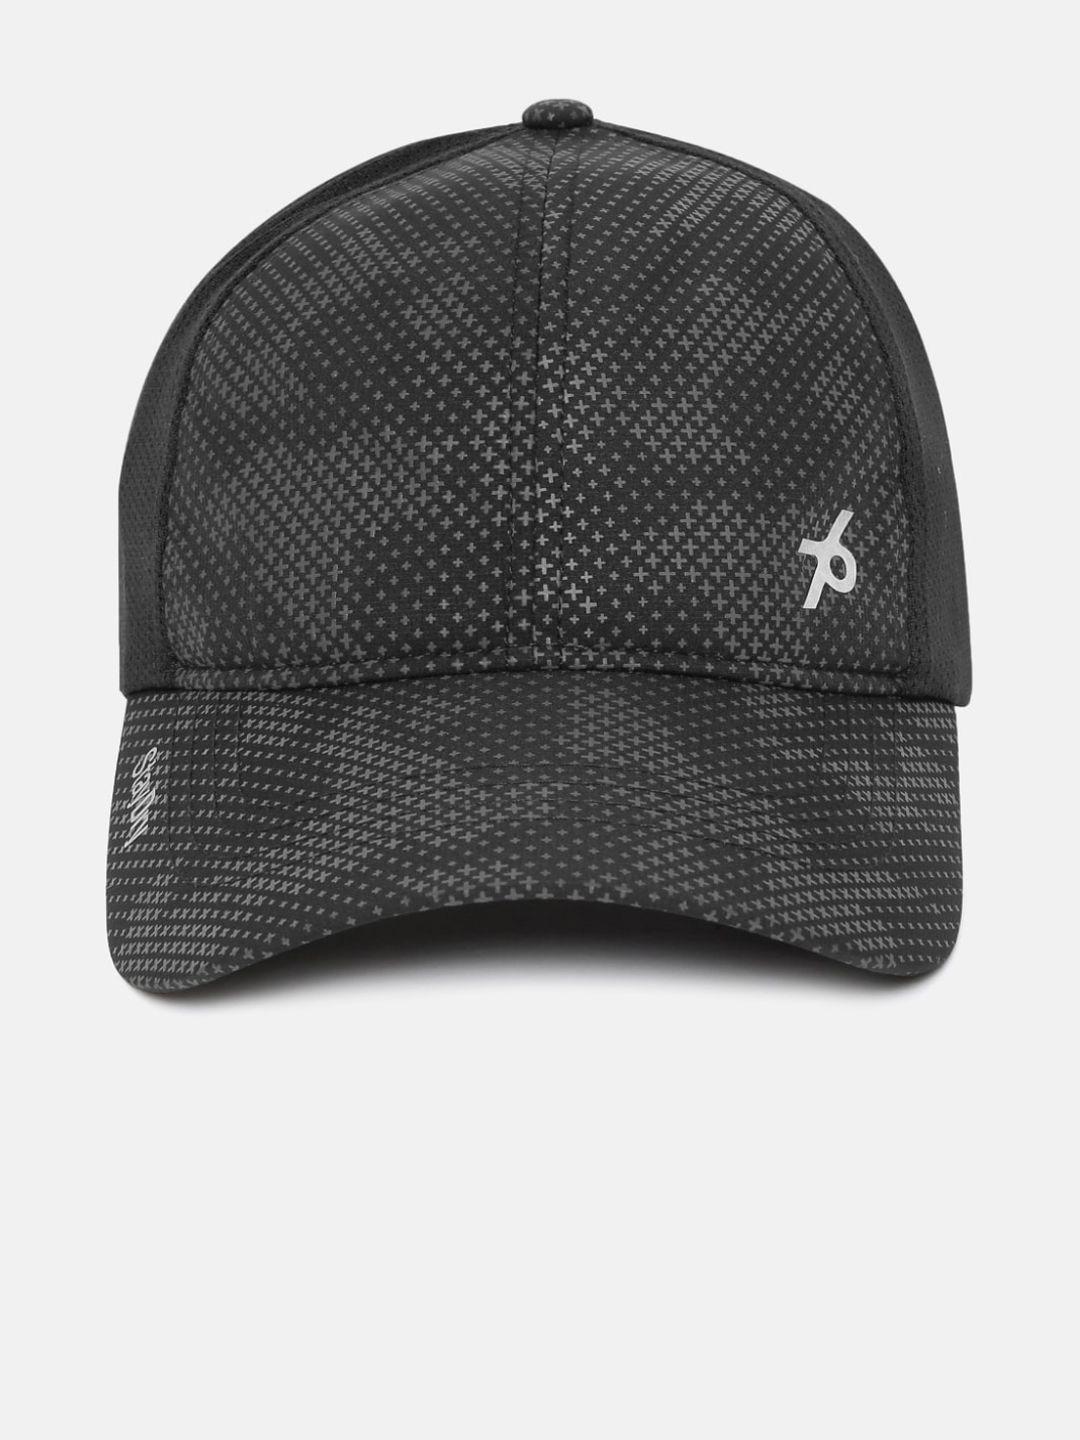 jockey men black printed baseball cap